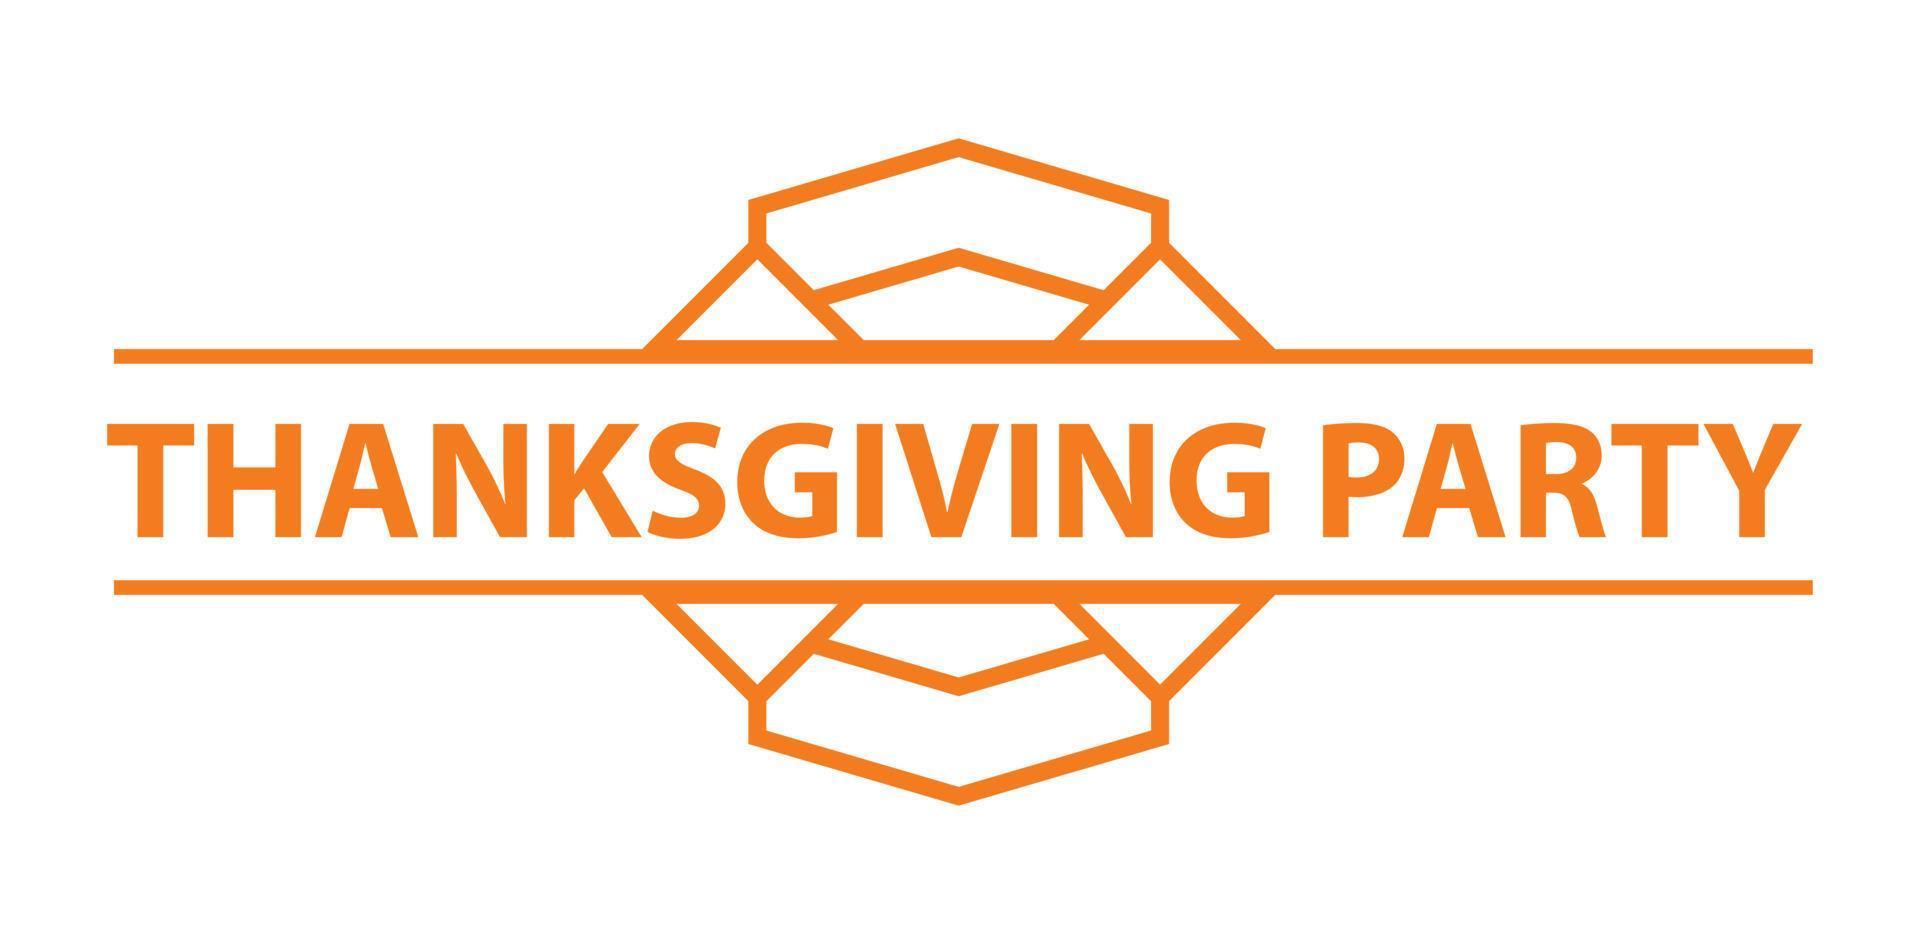 logotipo de la fiesta de acción de gracias, estilo simple vector